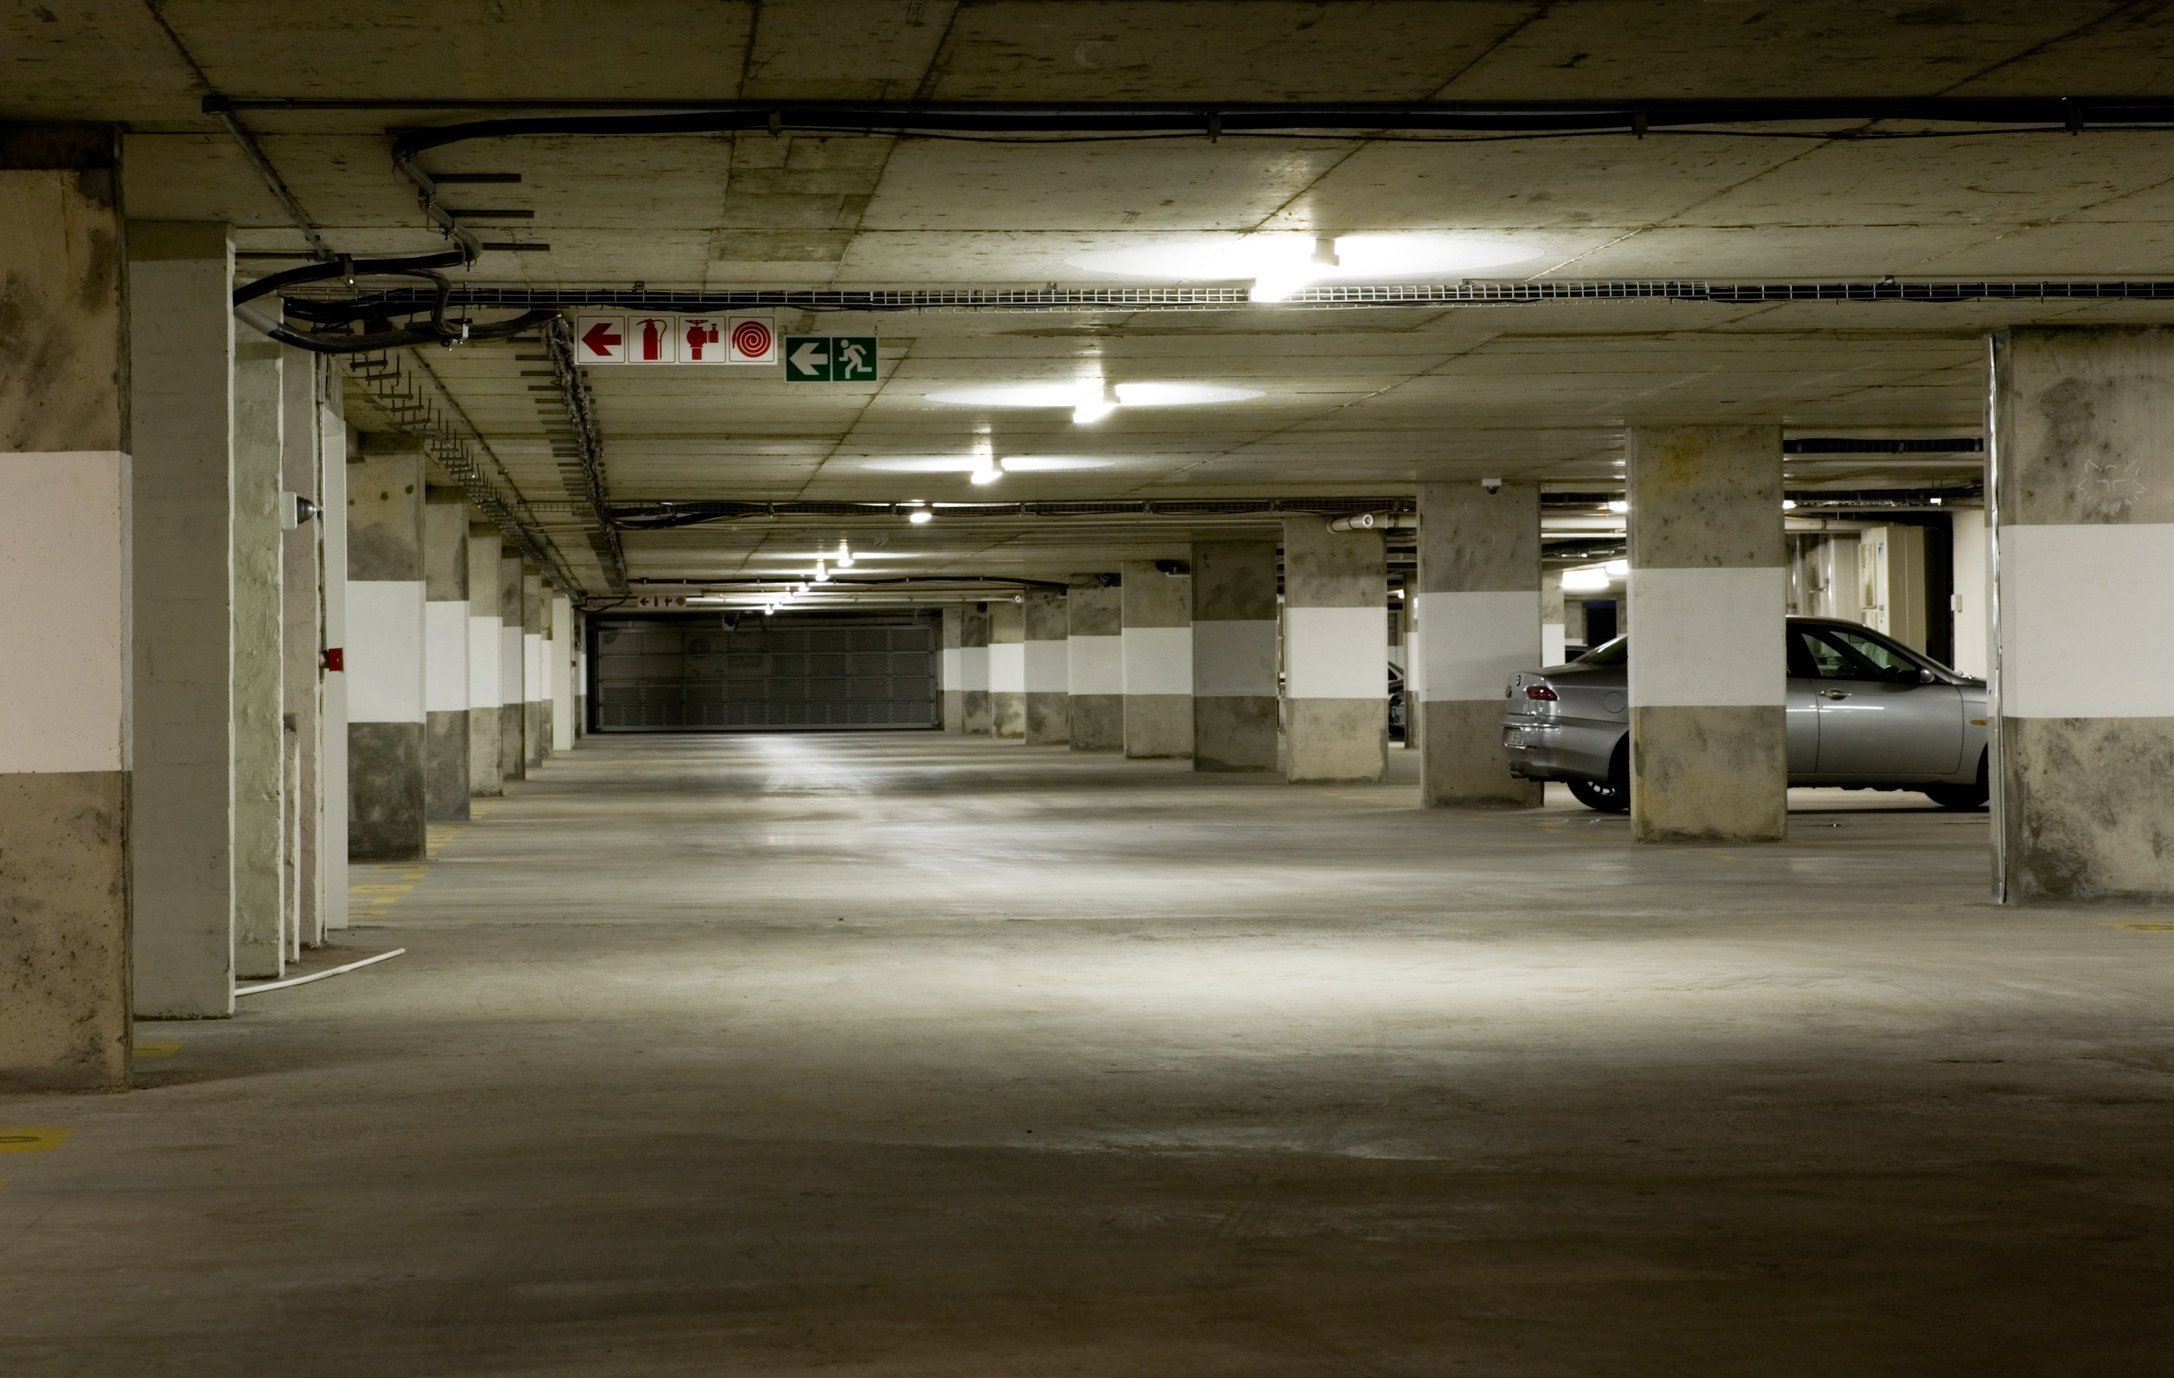 An empty, underground parking garage